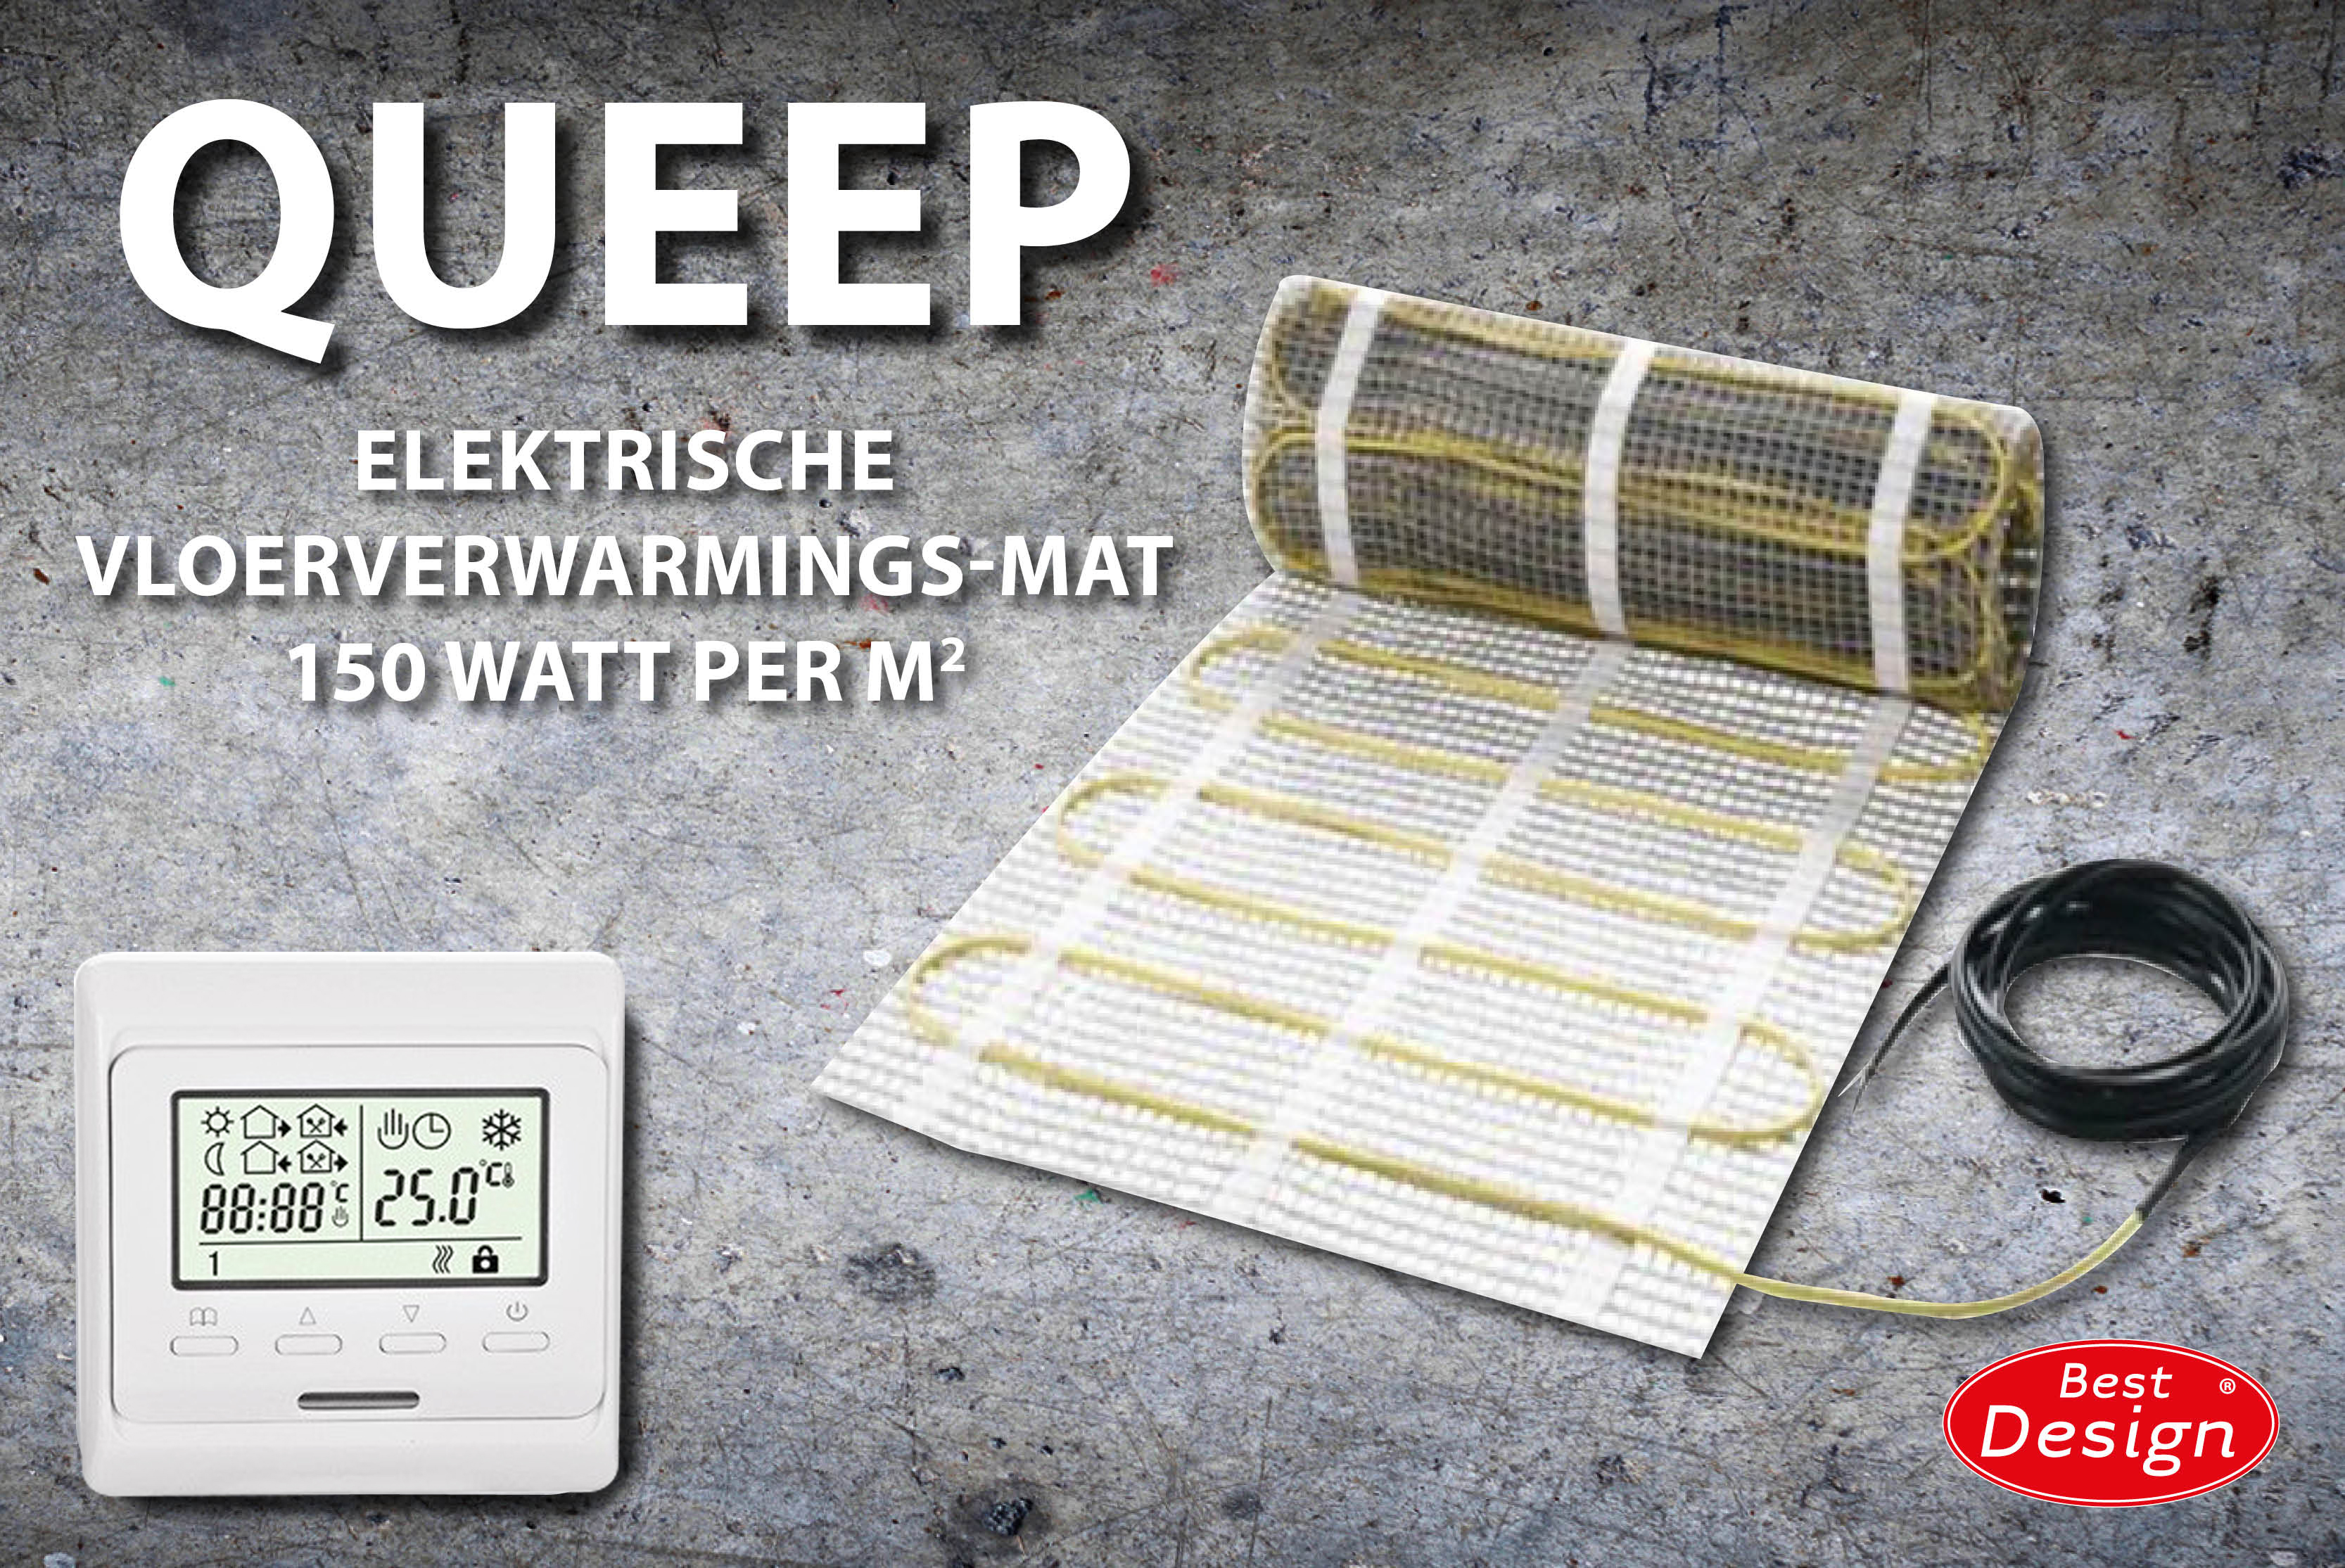 Best-Design Queep elektrische vloerverwarmings-mat 10.0 m2 Top Merken Winkel